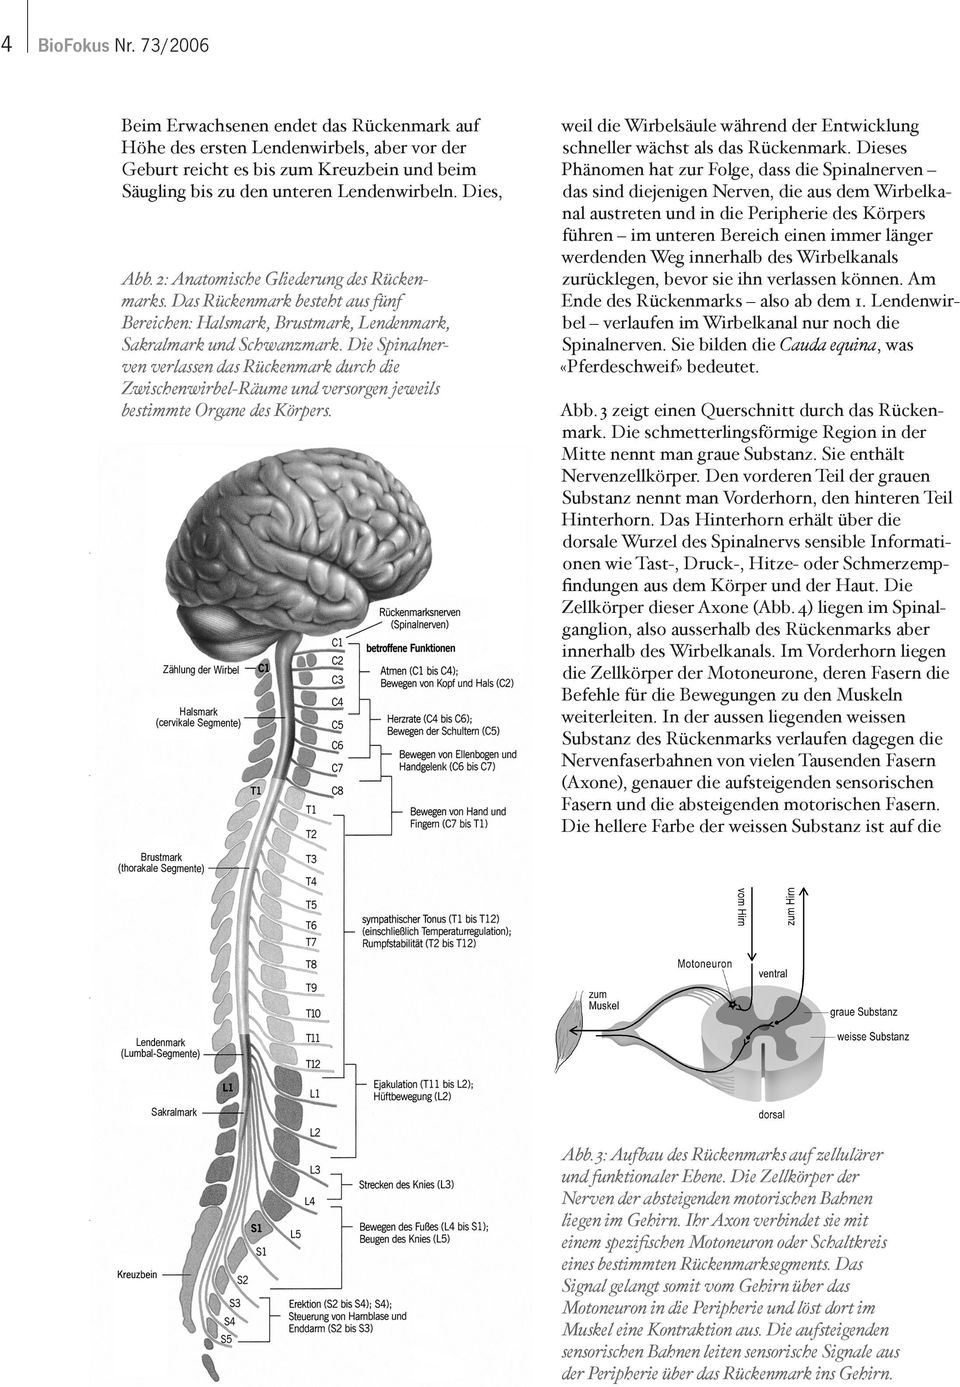 Die Spinalnerven verlassen das Rückenmark durch die Zwischenwirbel-Räume und versorgen jeweils bestimmte Organe des Körpers.